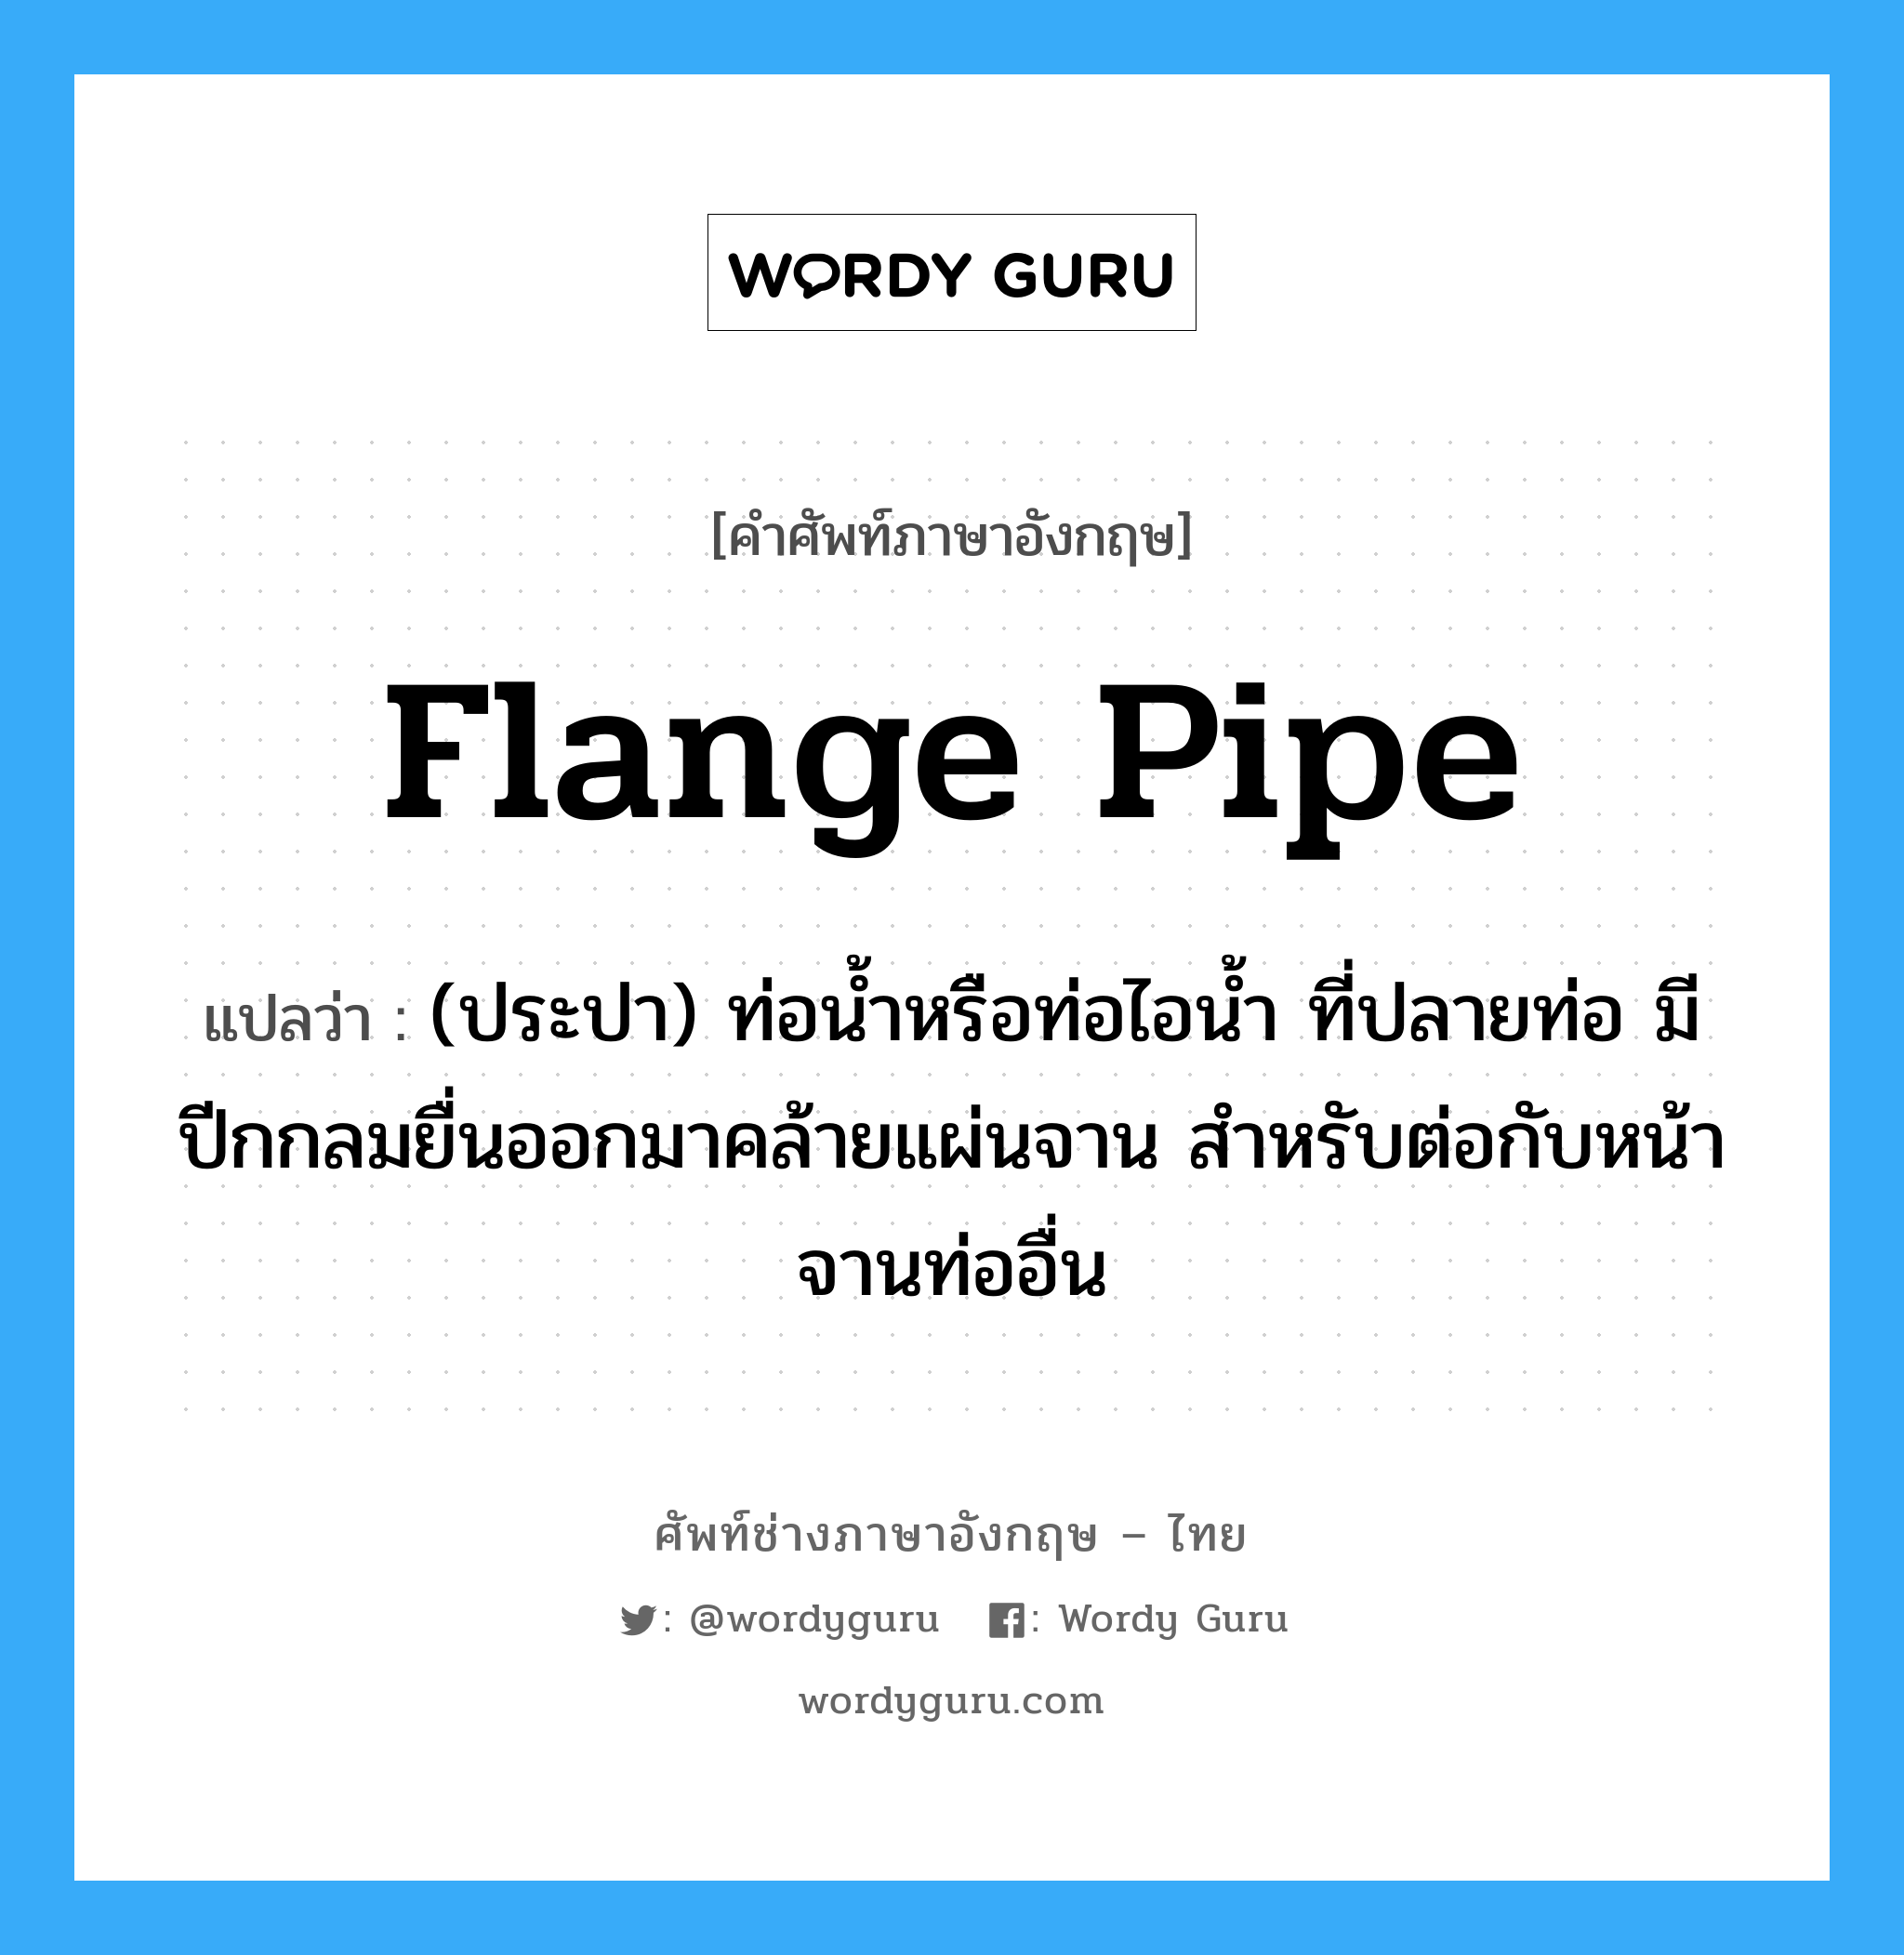 flange pipe แปลว่า?, คำศัพท์ช่างภาษาอังกฤษ - ไทย flange pipe คำศัพท์ภาษาอังกฤษ flange pipe แปลว่า (ประปา) ท่อน้ำหรือท่อไอน้ำ ที่ปลายท่อ มีปีกกลมยื่นออกมาคล้ายแผ่นจาน สำหรับต่อกับหน้าจานท่ออื่น